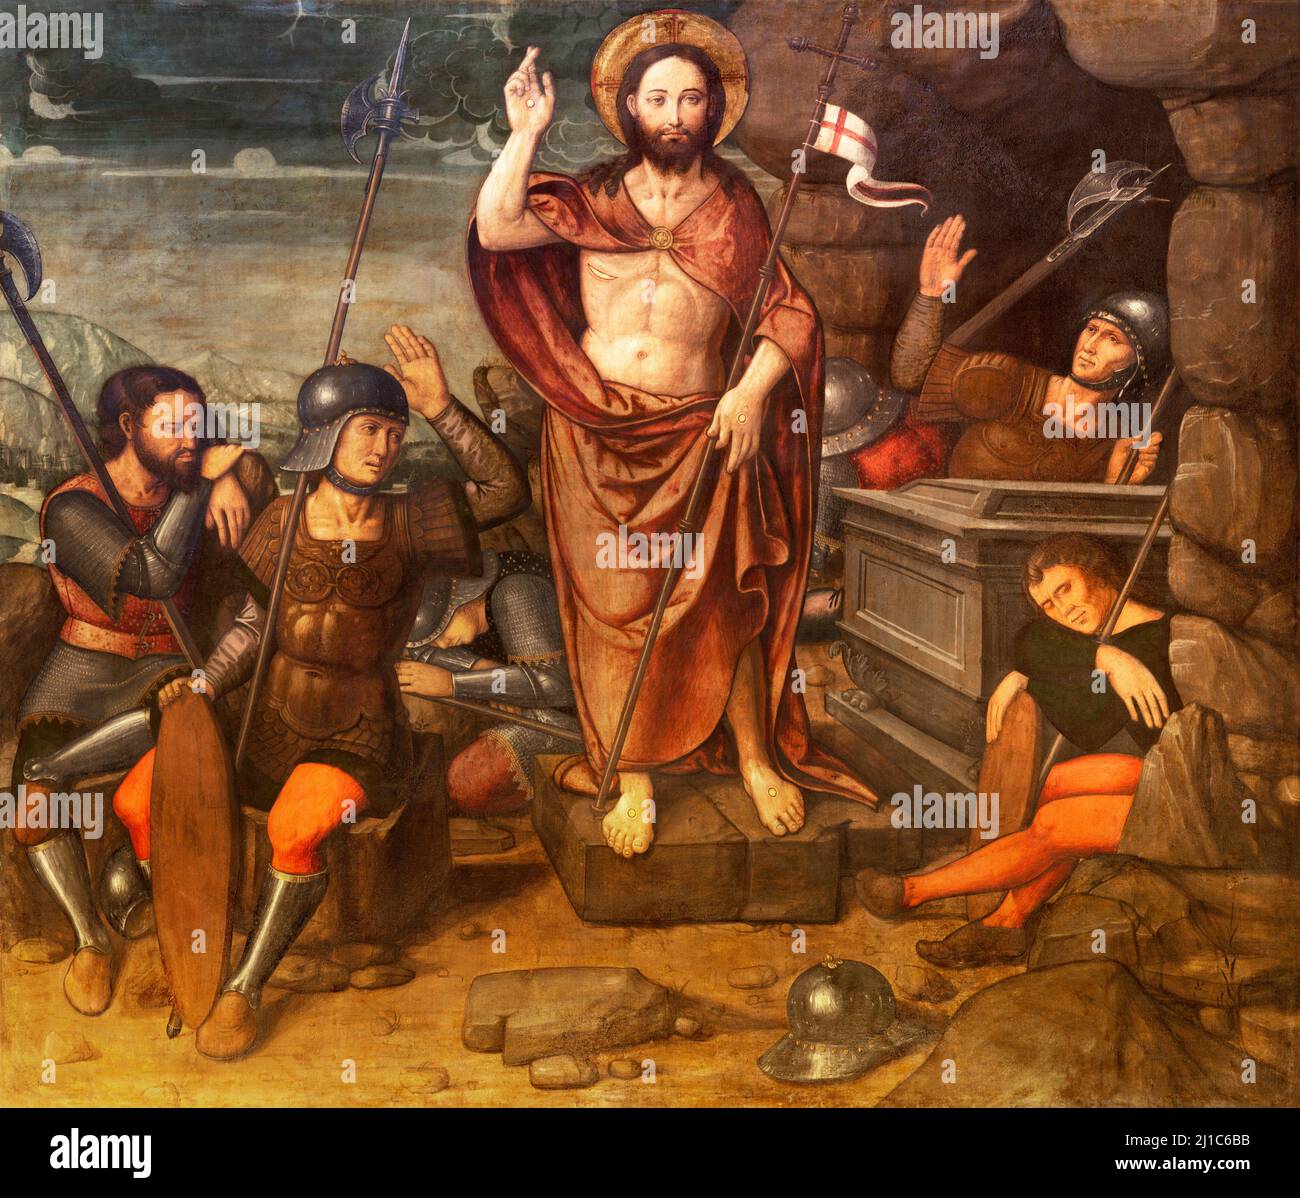 VALENCIA, SPANIEN - 14. FEBRUAR 2022: Das Gemälde der Auferstehung in der Kathedrale und dem St. Peter Kapell von Nicolas Falco aus dem 16. Jh. Stockfoto